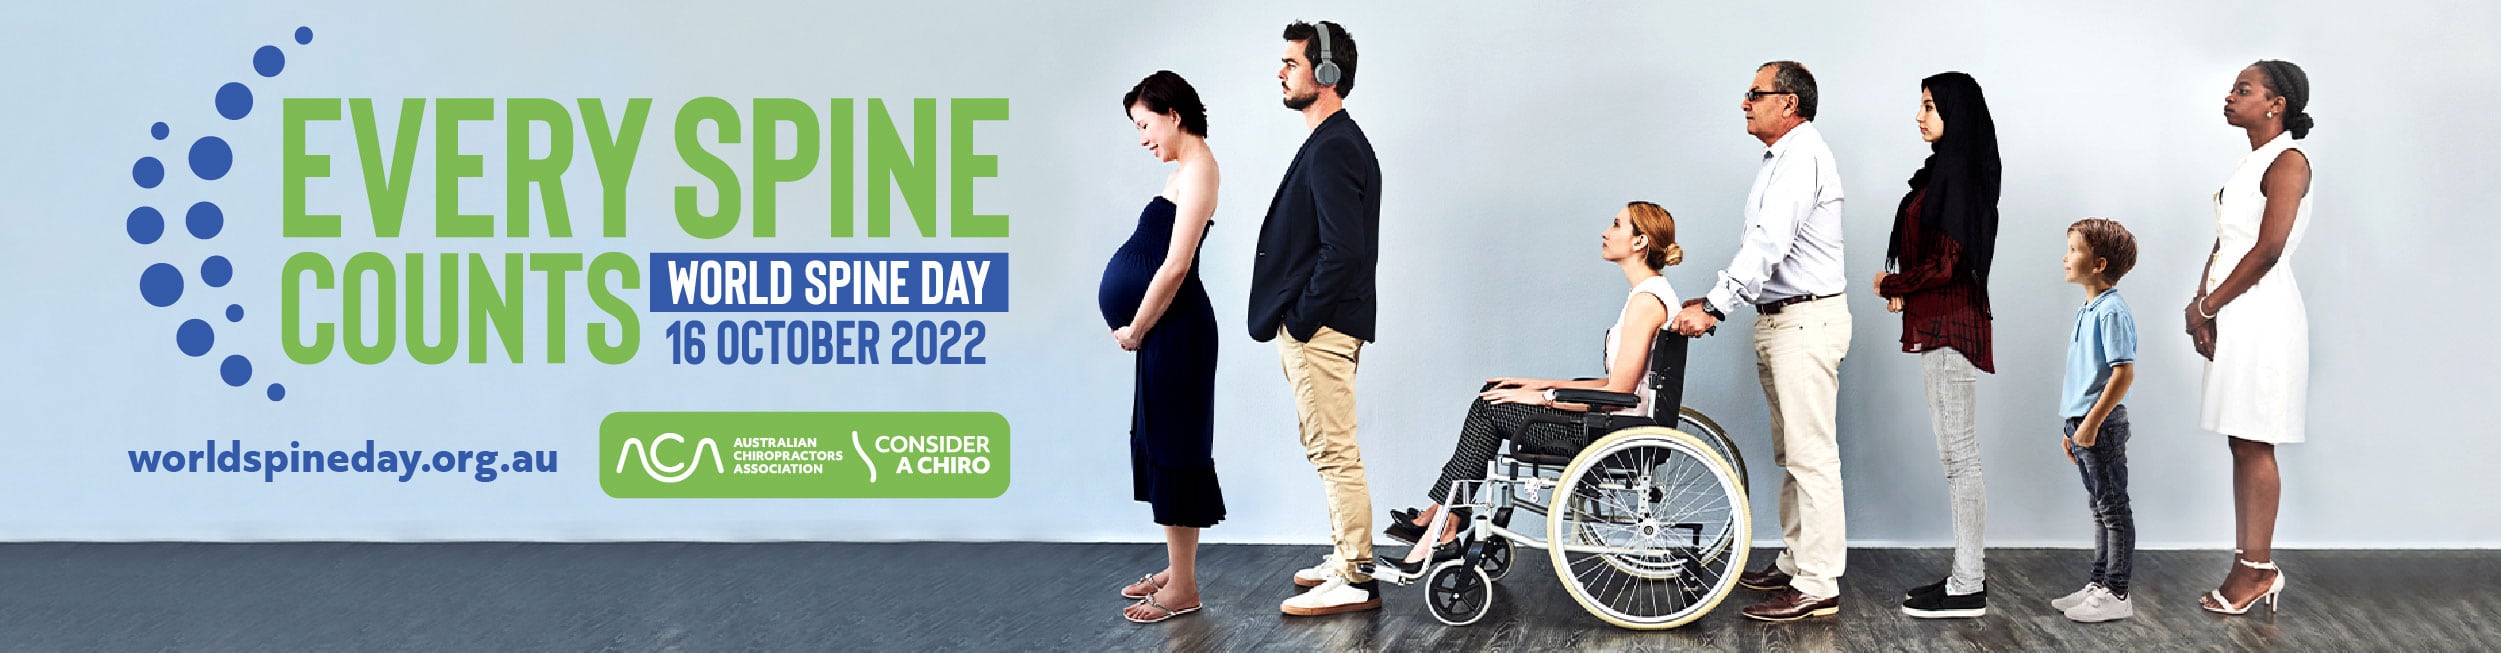 Melbourne Chiropractor - World Spine Day 2022